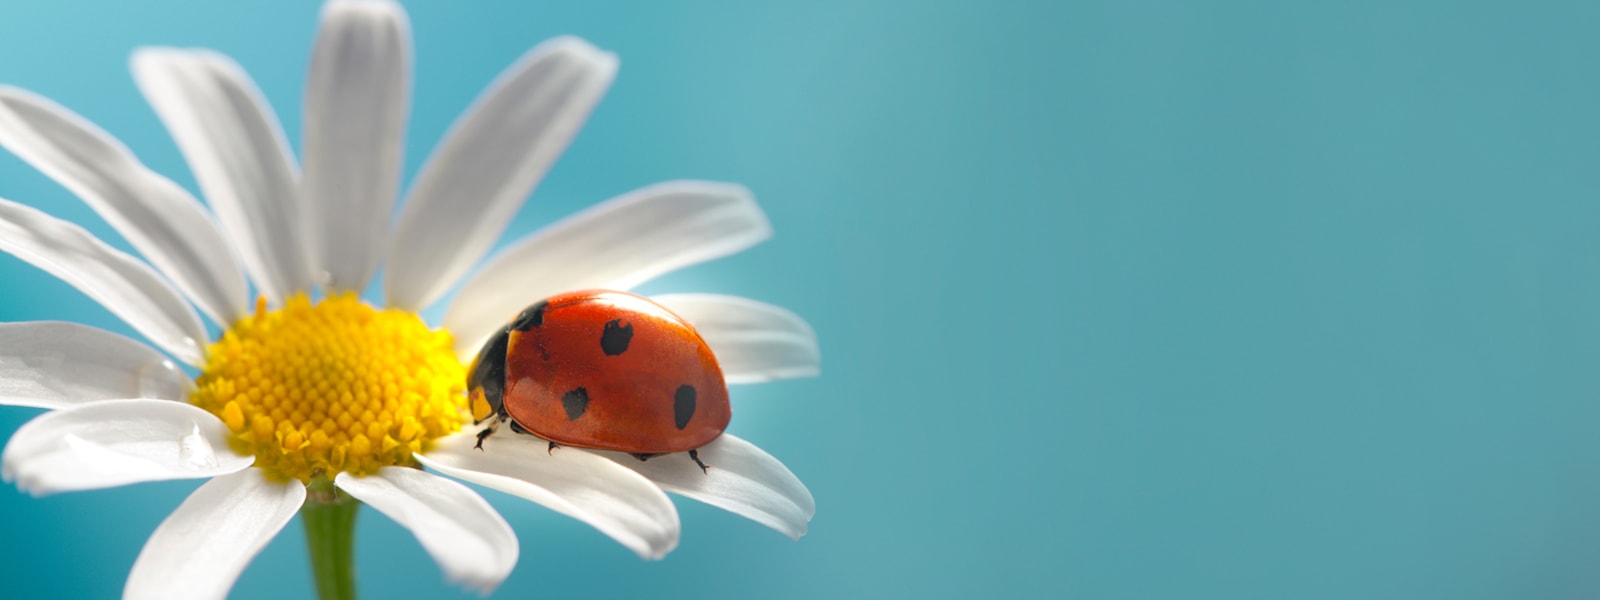 Daisy with ladybug